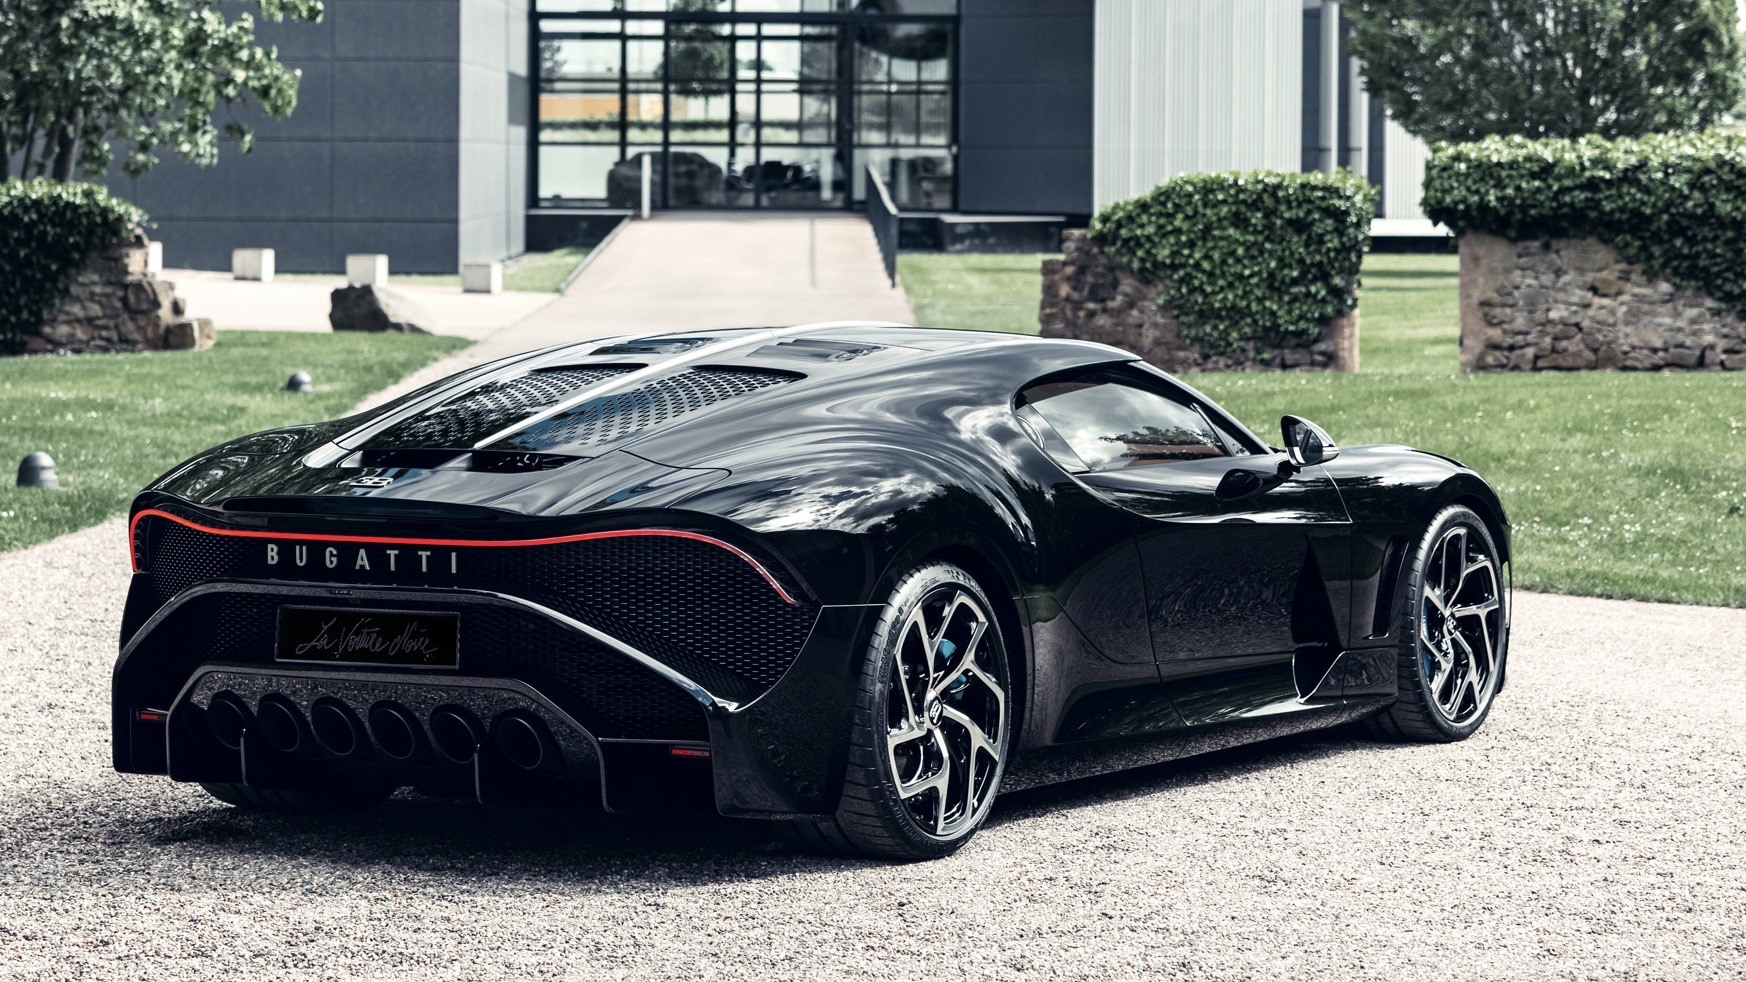 Bugatti La Voiture Noire, la quintessence de l'art automobile français